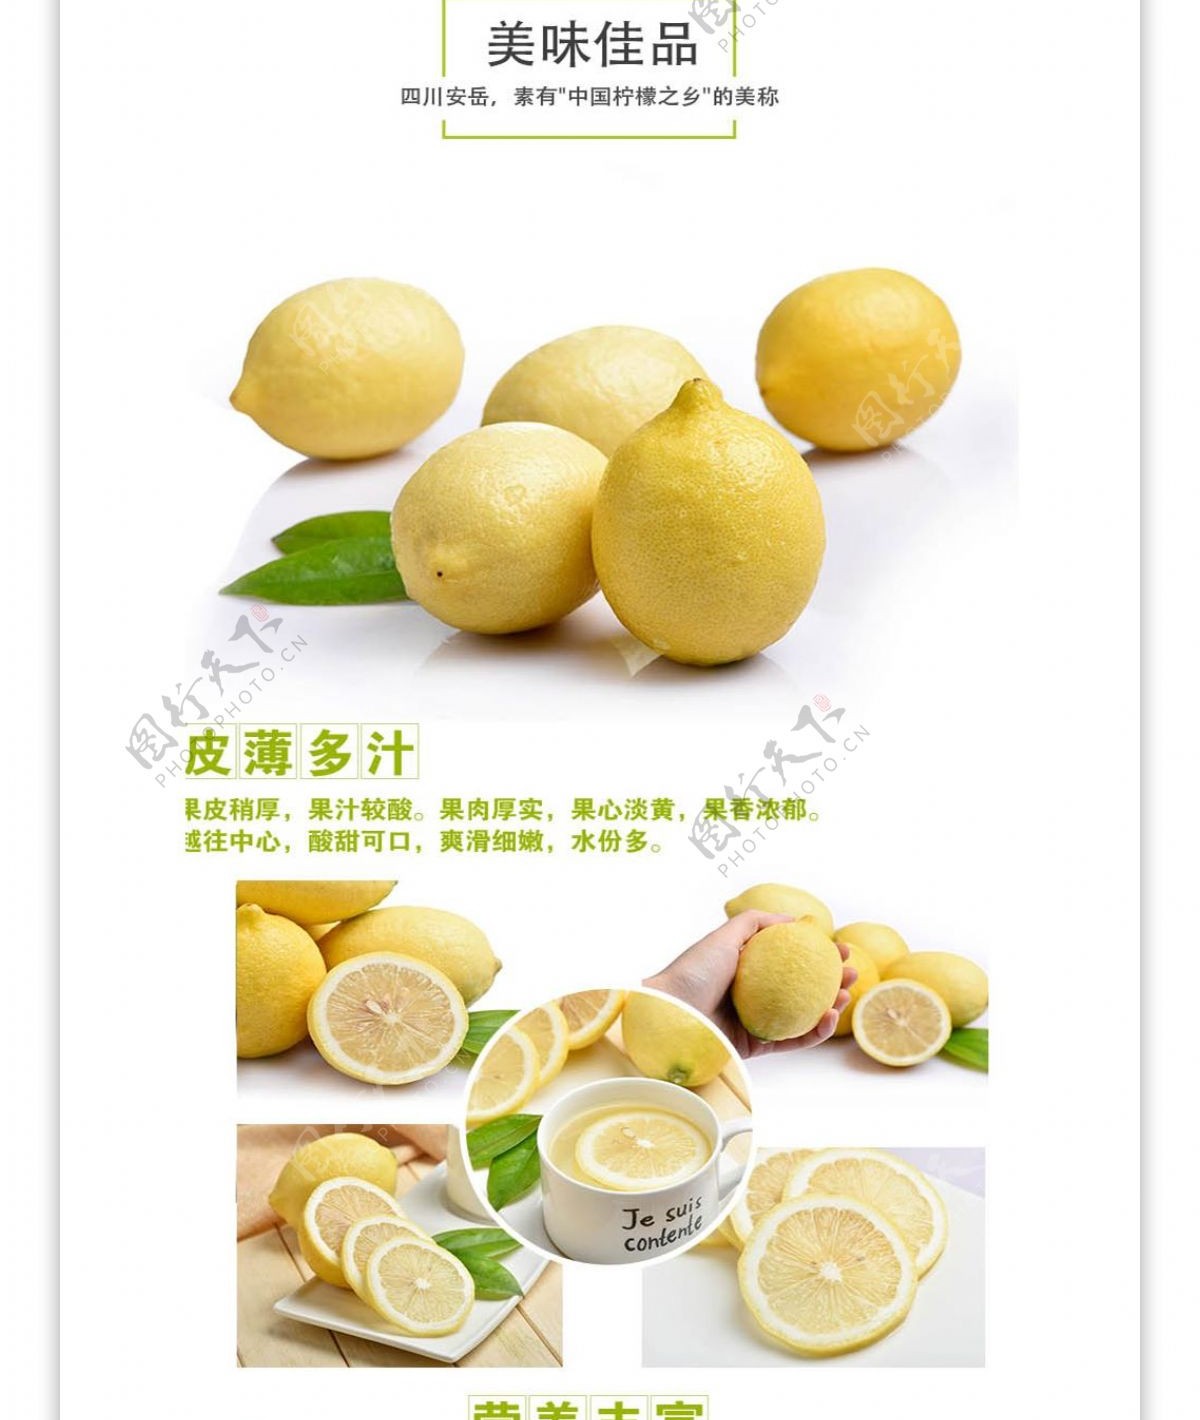 电商淘宝安岳黄柠檬食品生鲜详情页